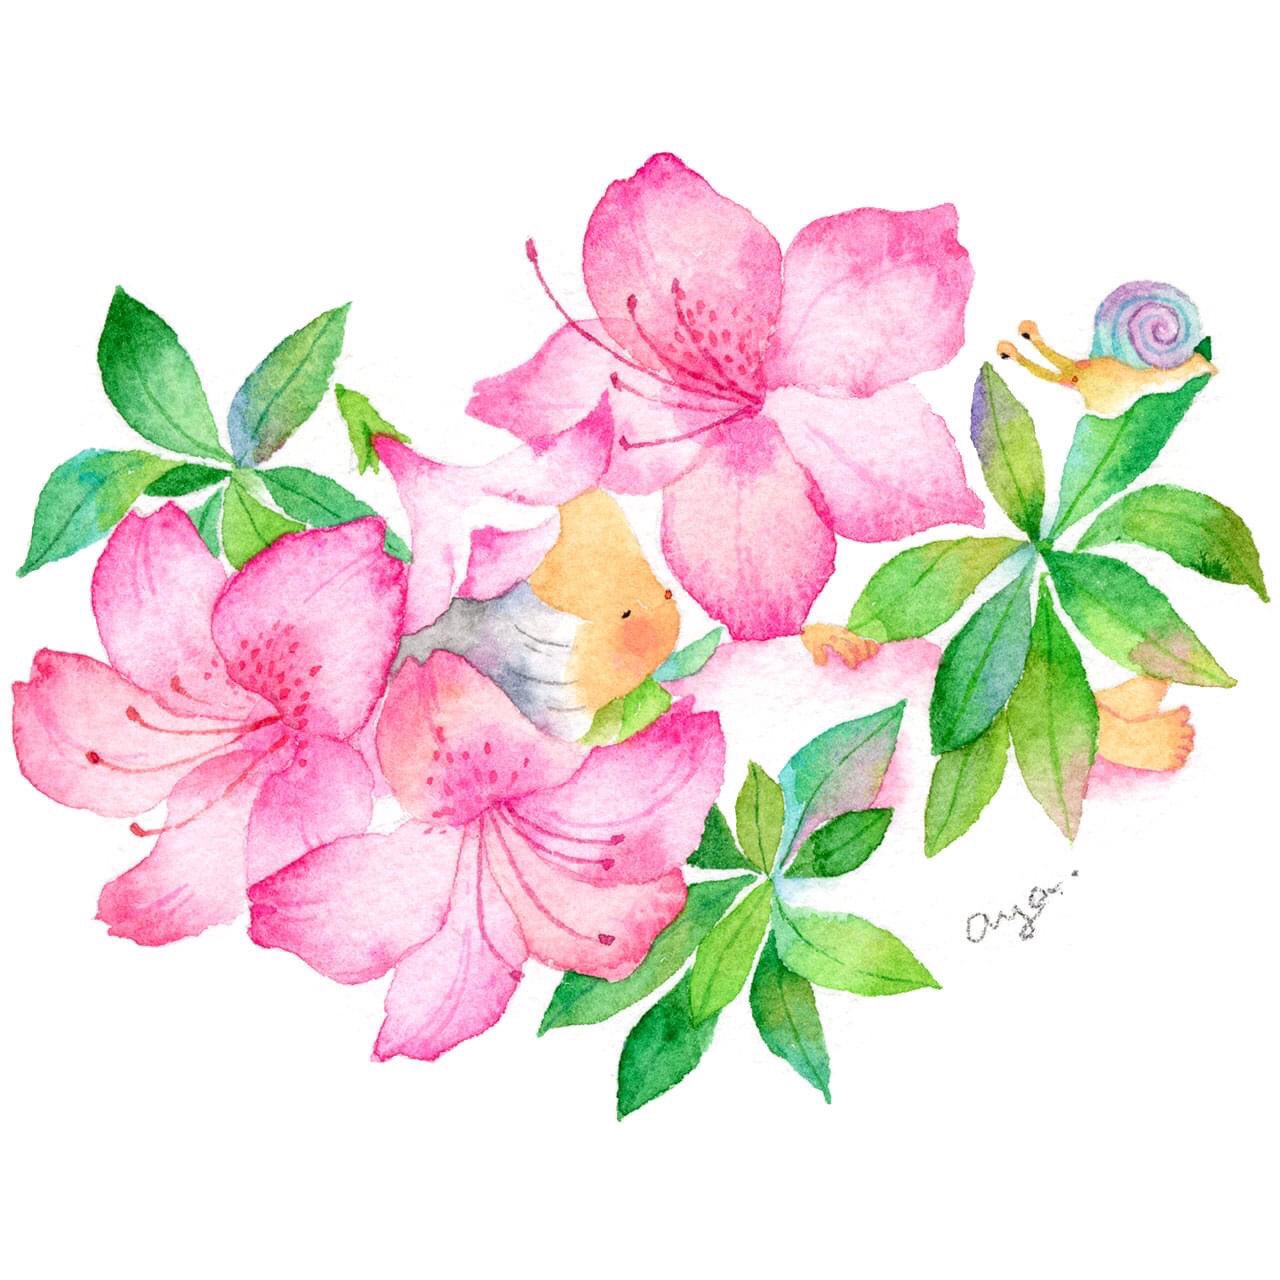 こばやしあや 6月の花 皐月 さつき A Dwarf Azalea 花言葉は 節制 さつきはつつじよりも花が小さいそうです 絵 水彩画 水彩 透明水彩 イラスト Drawing Illustration Watercolor Art スケッチ こばやしあや 花言葉 誕生